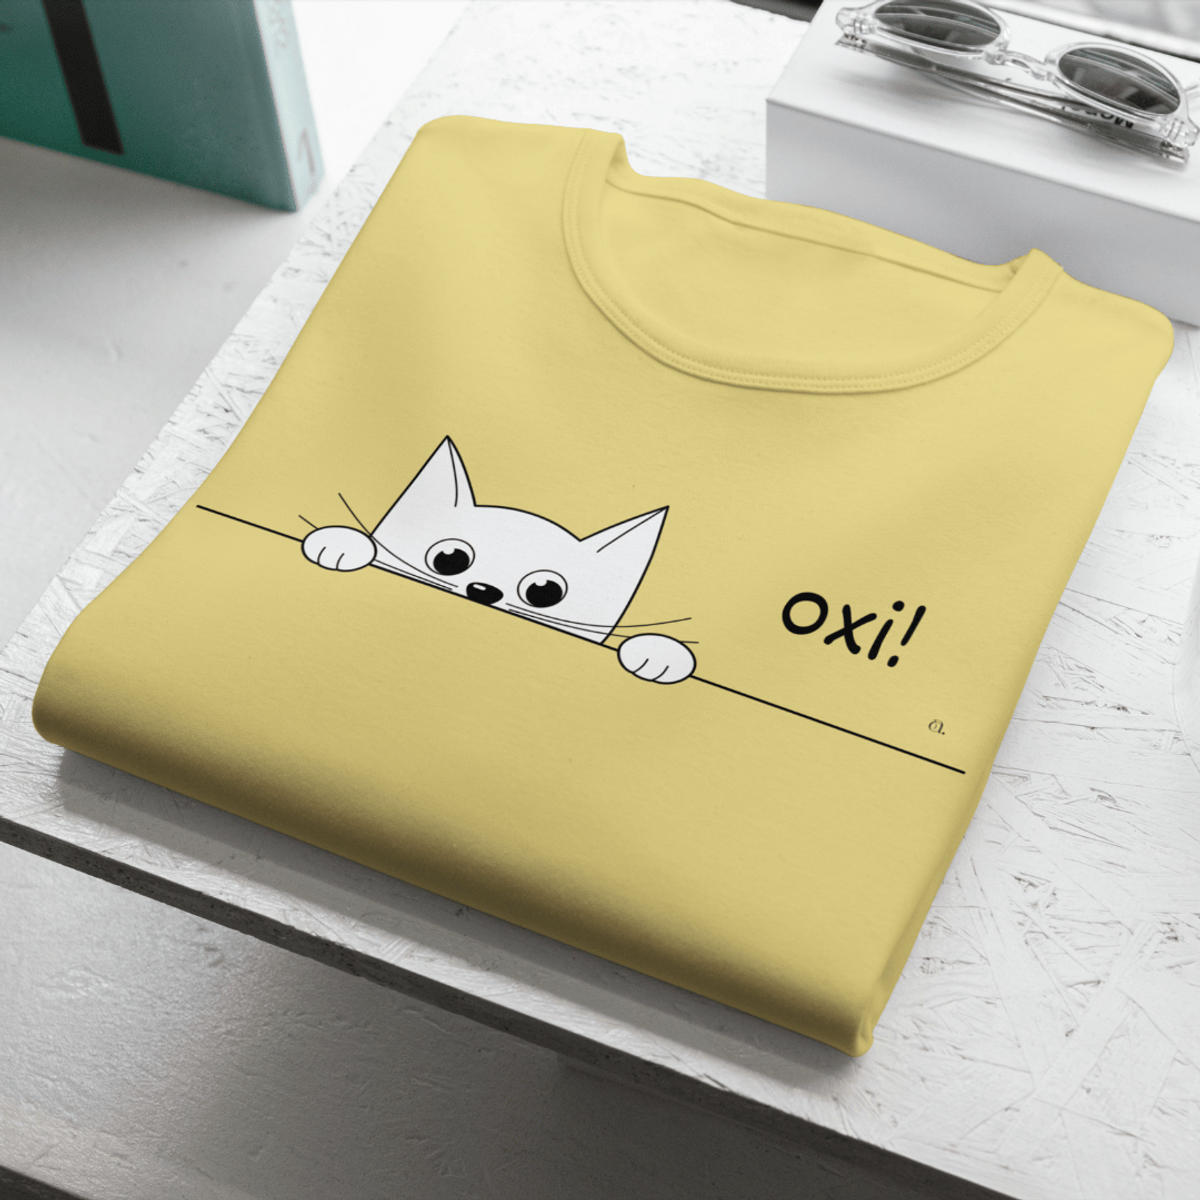 Nome do produto: Camiseta Gato Oxi!